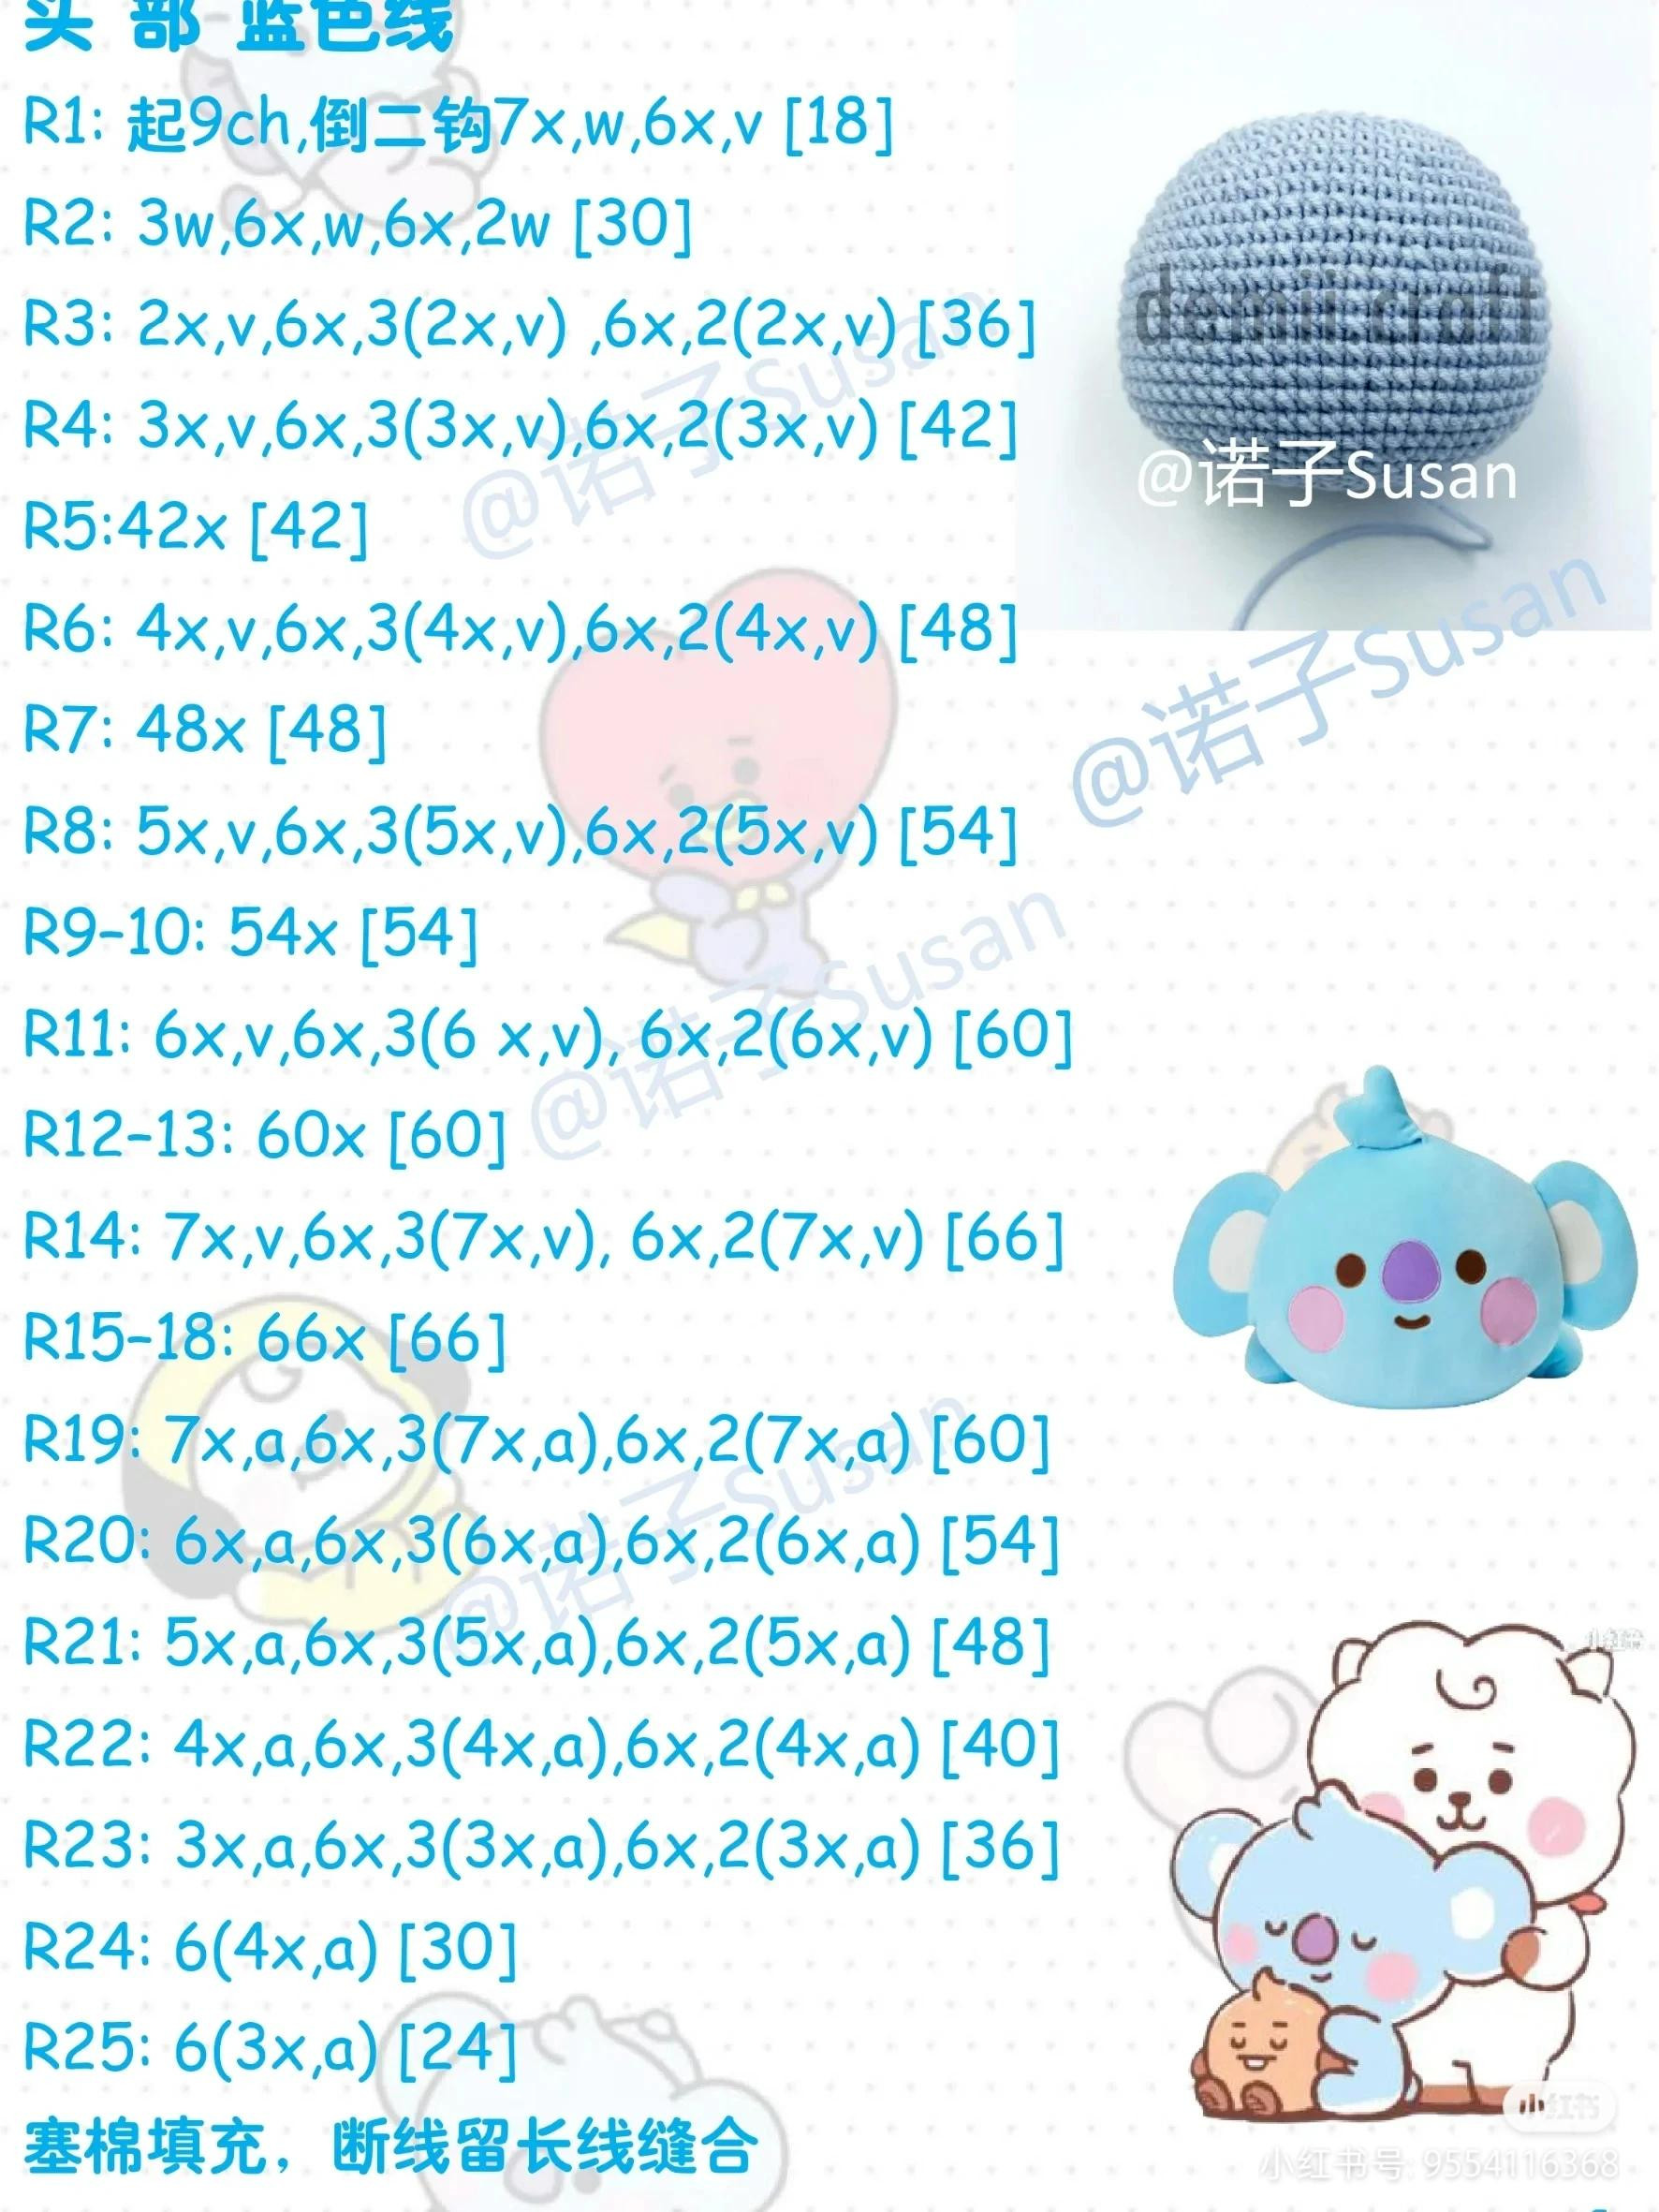 Koya bear crochet pattern (bt21)